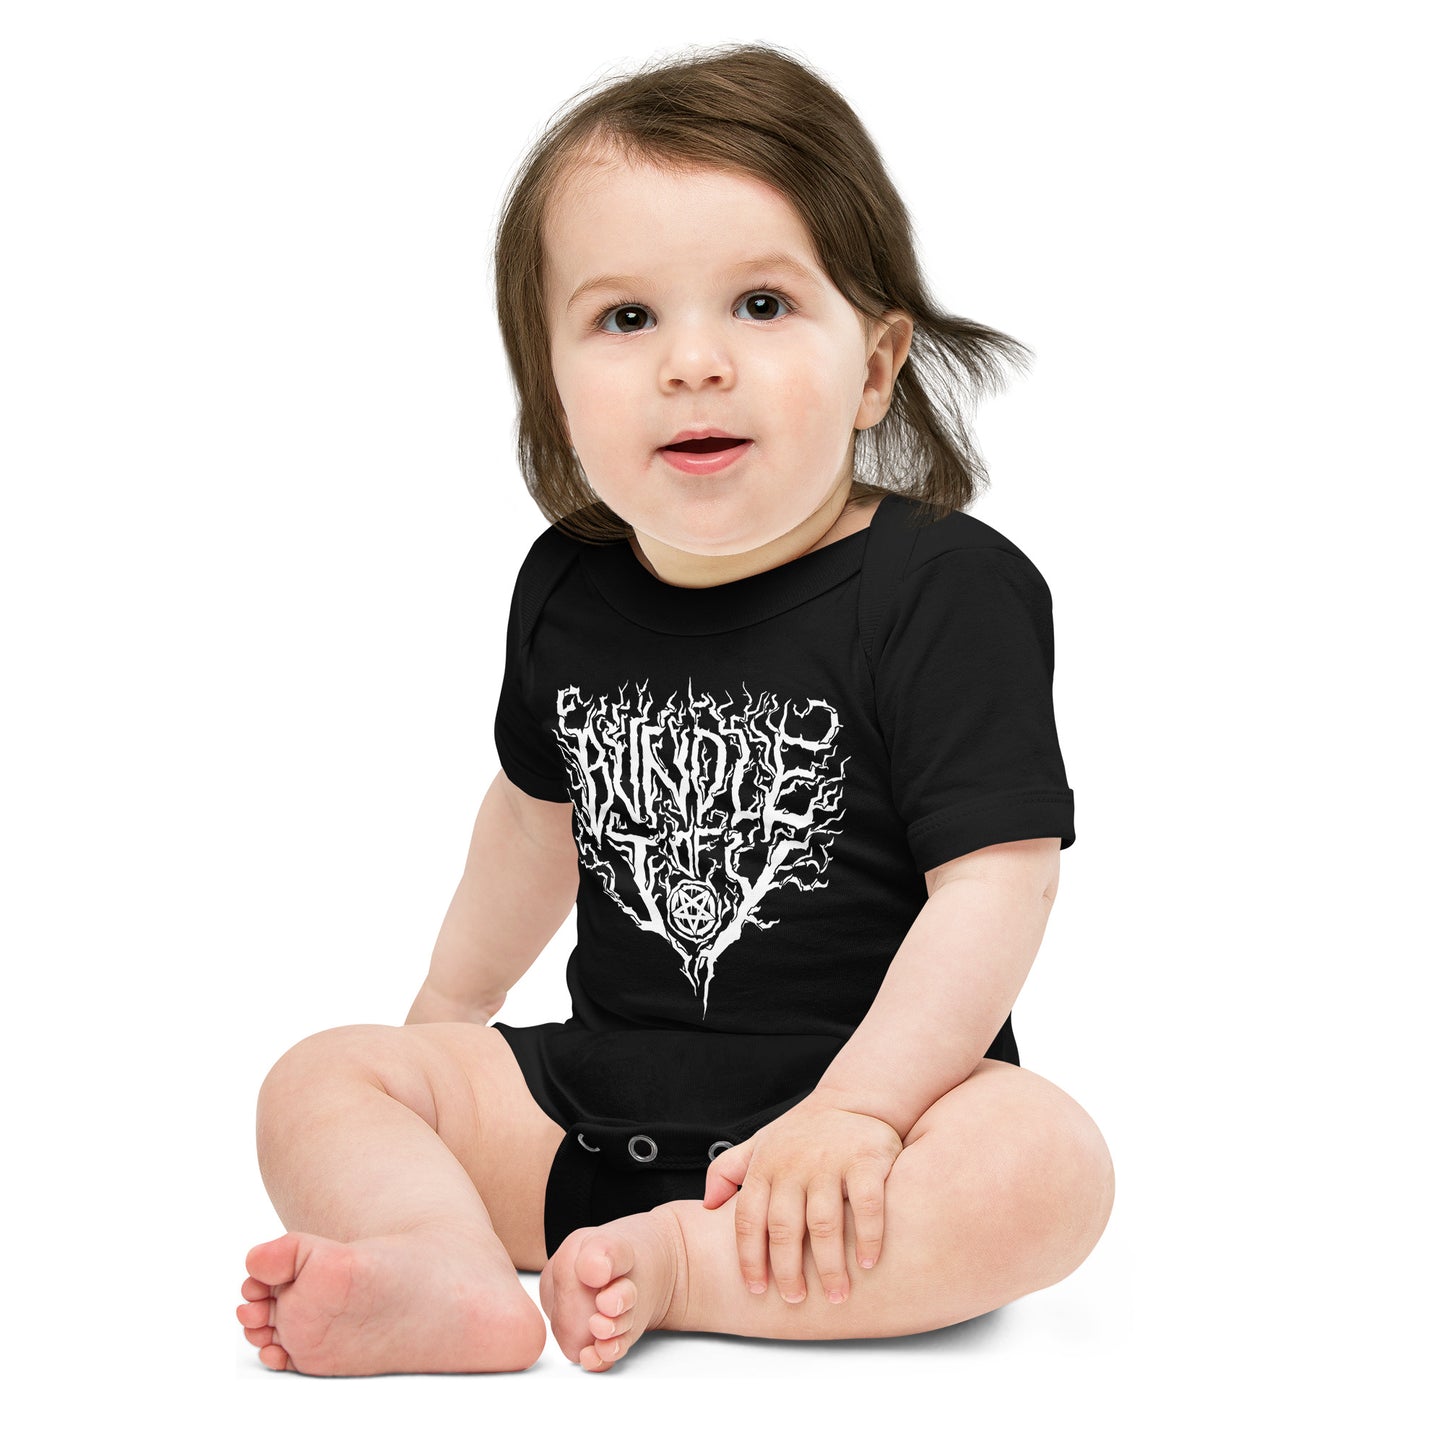 Bundle of Joy - Funny Heavy Metal Baby Bodysuit Onesie gift for new parents